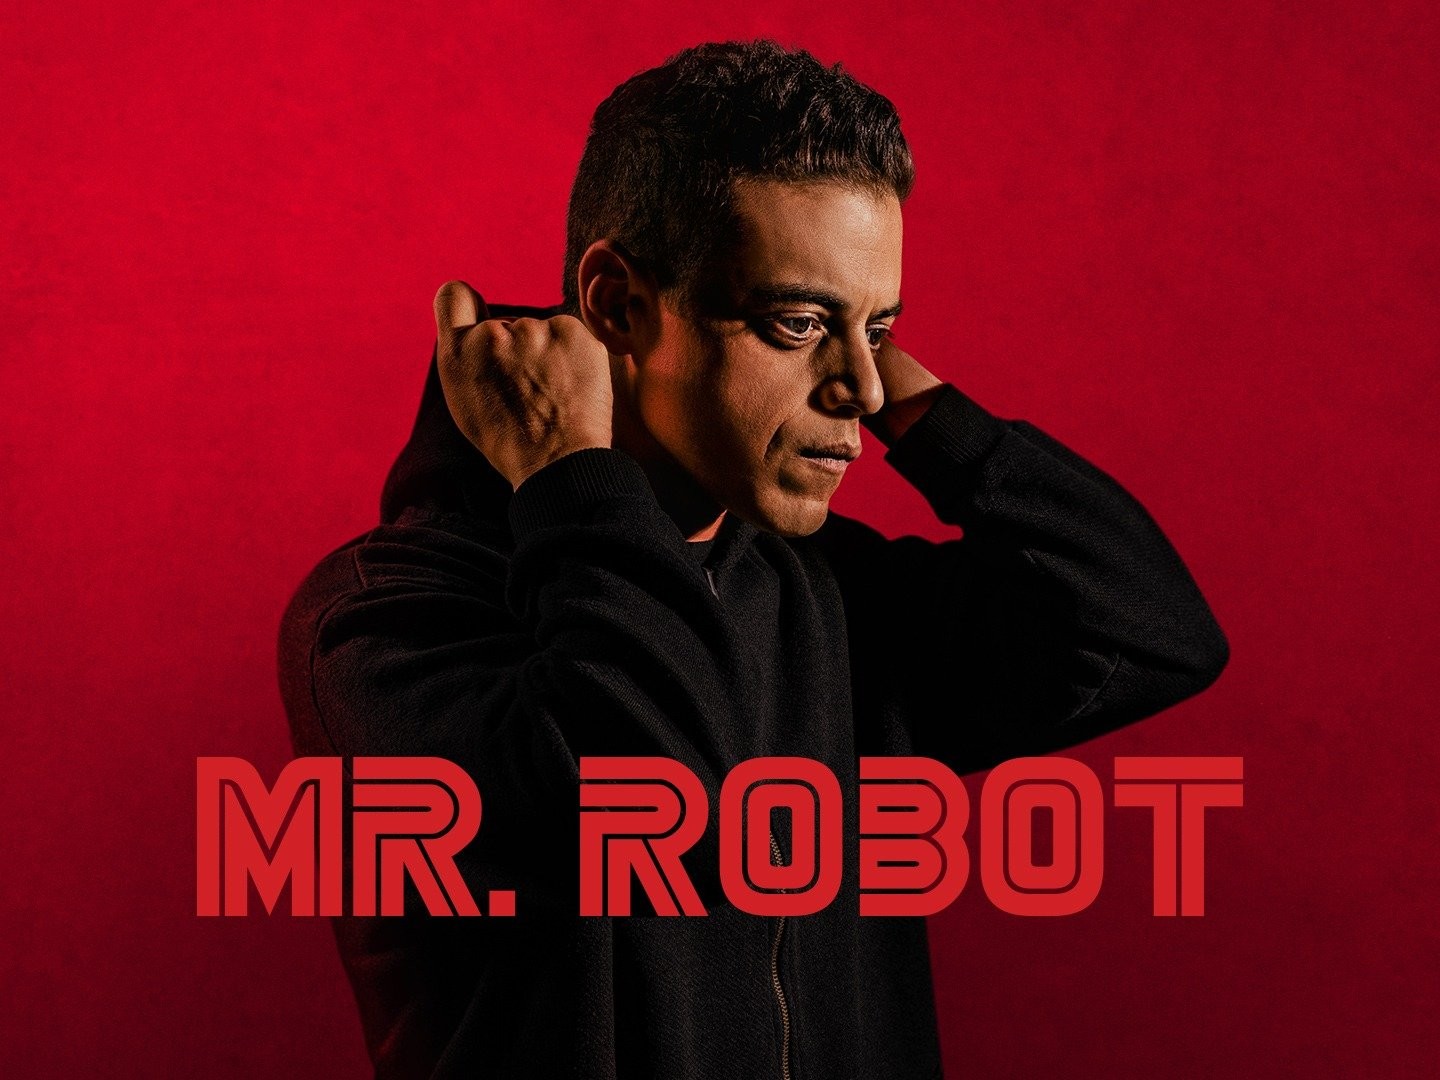 Mr. Robot' Season 4: First Look Image, Teaser Poem, Website Released